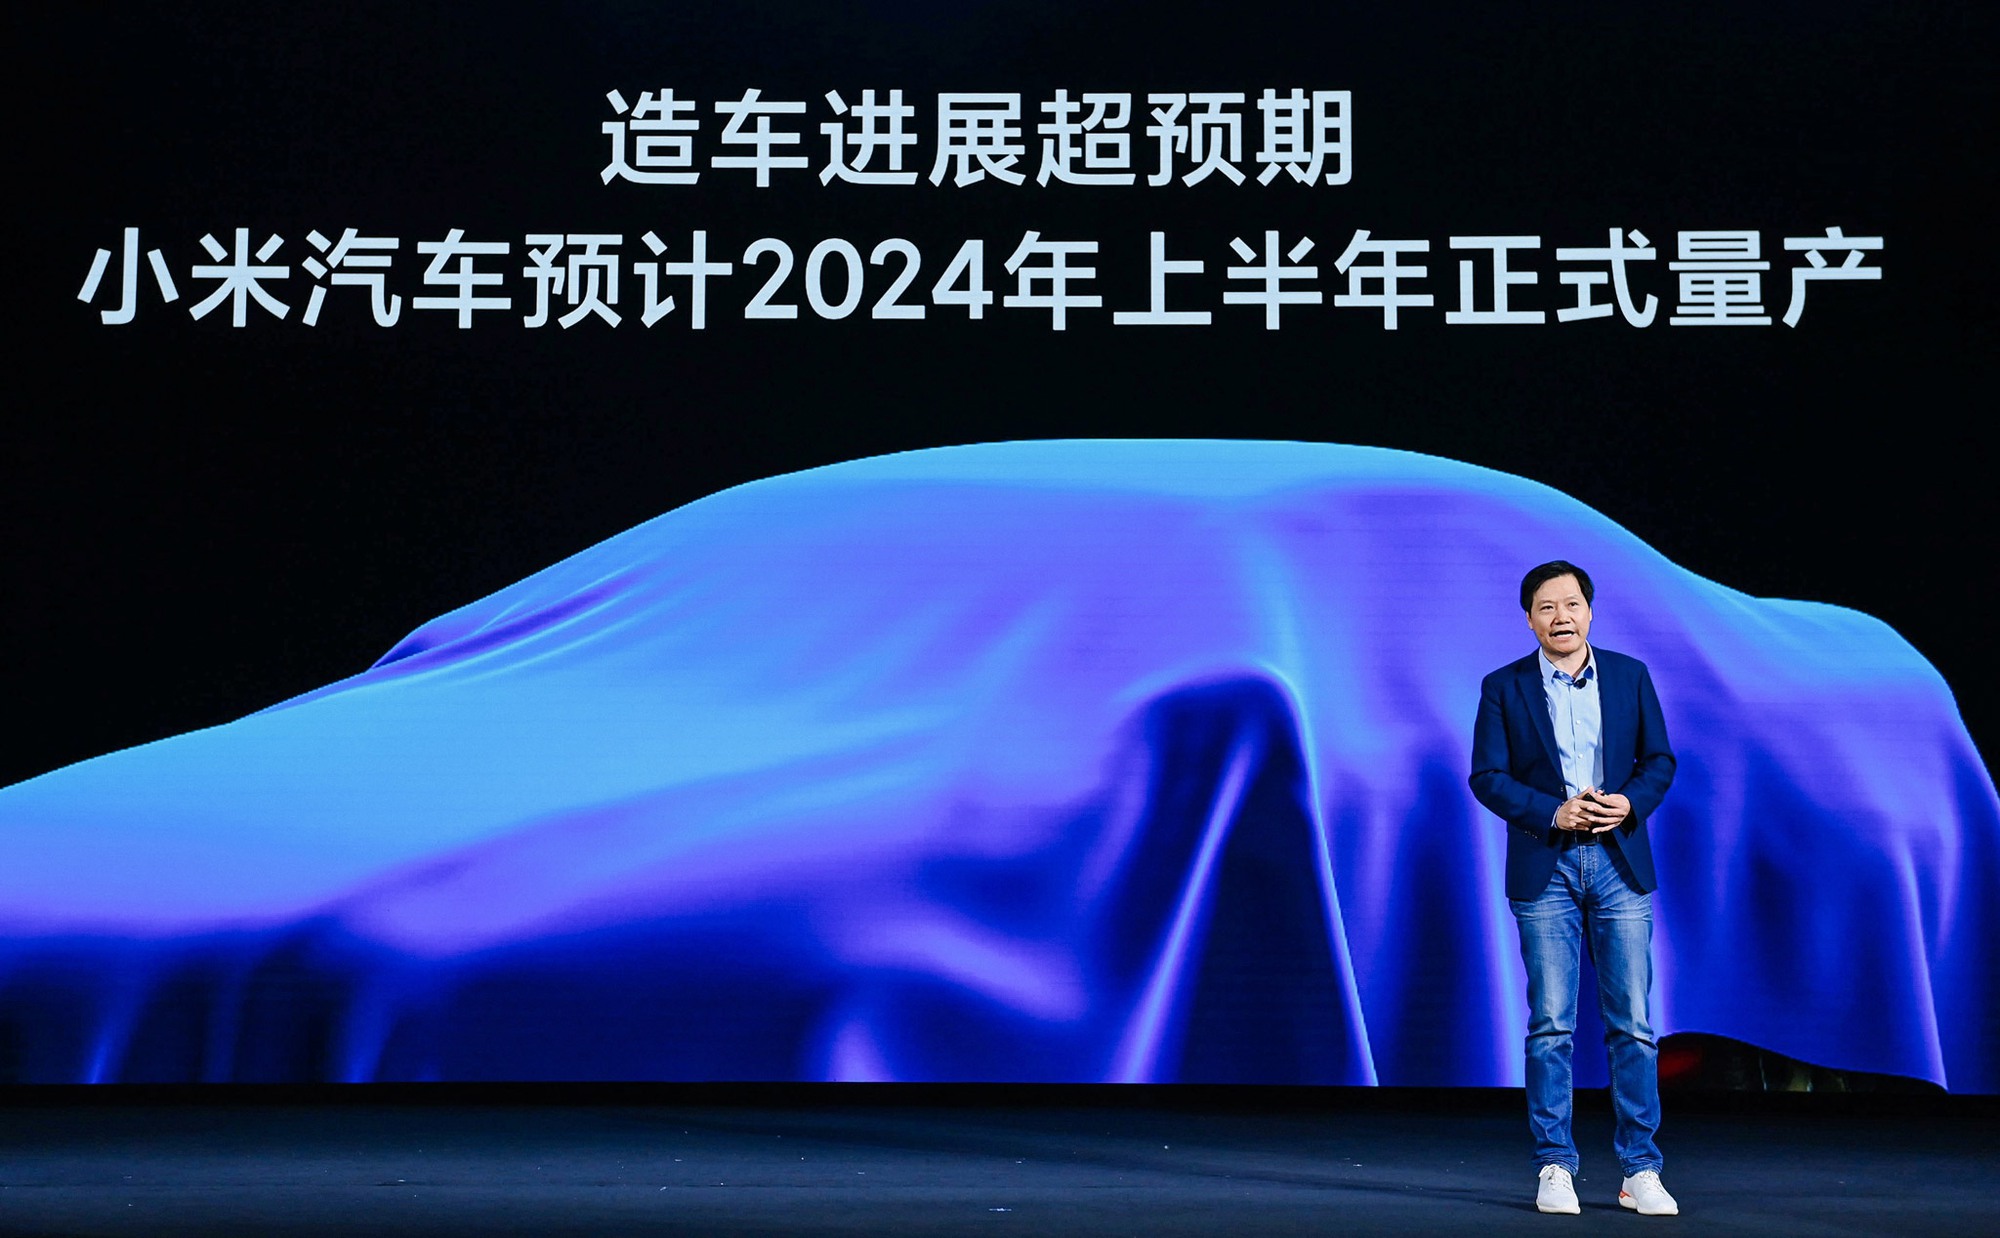 Cá nhân Lei đang dẫn đầu dự án 10 tỷ USD để sản xuất xe điện mang thương hiệu Xiaomi vào năm 2024. Ảnh: @AFP.